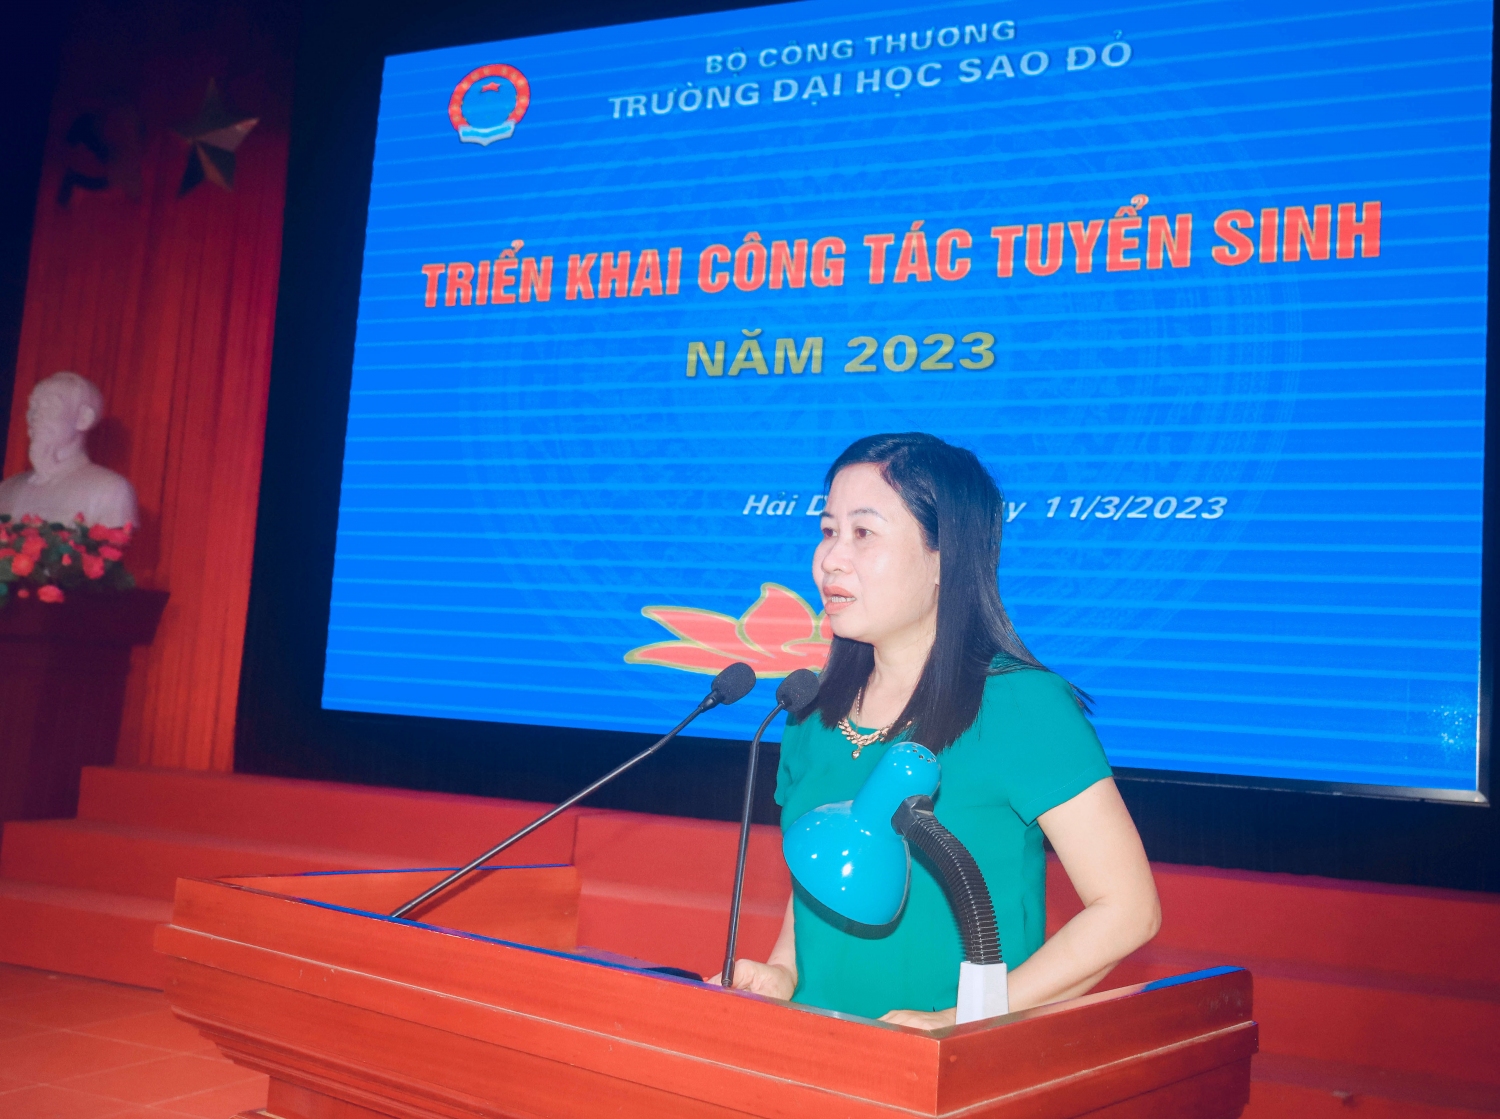  NGƯT. TS Nguyễn Thị Kim Nguyên – Phó Bí thư Đảng ủy, Phó Hiệu trưởng phát biểu chỉ đạo triển khai công tác tuyển sinh năm 2023